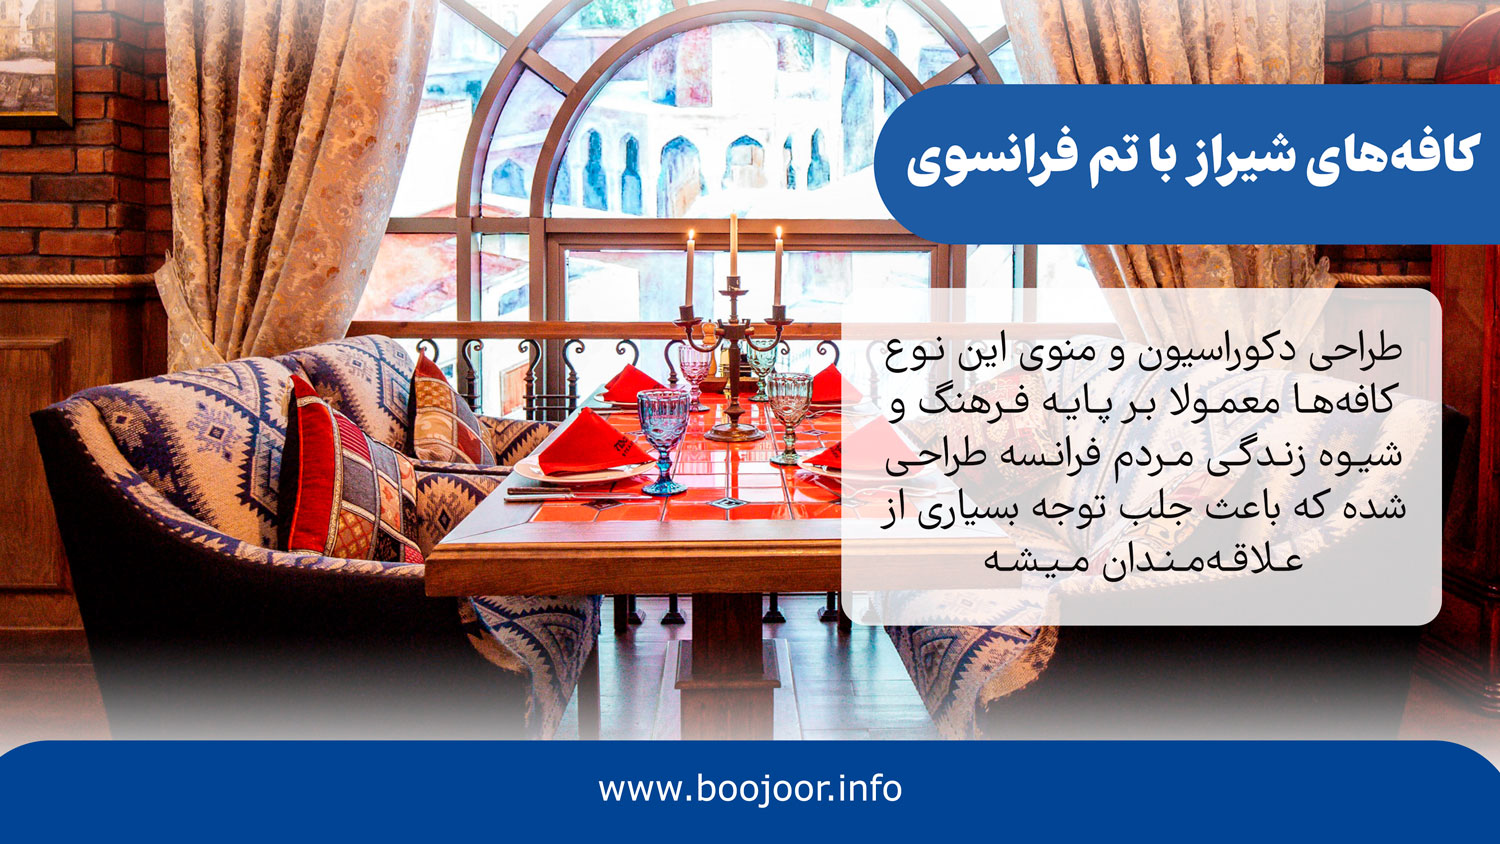 کافه های شیراز با تم فرانسوی - بوجور